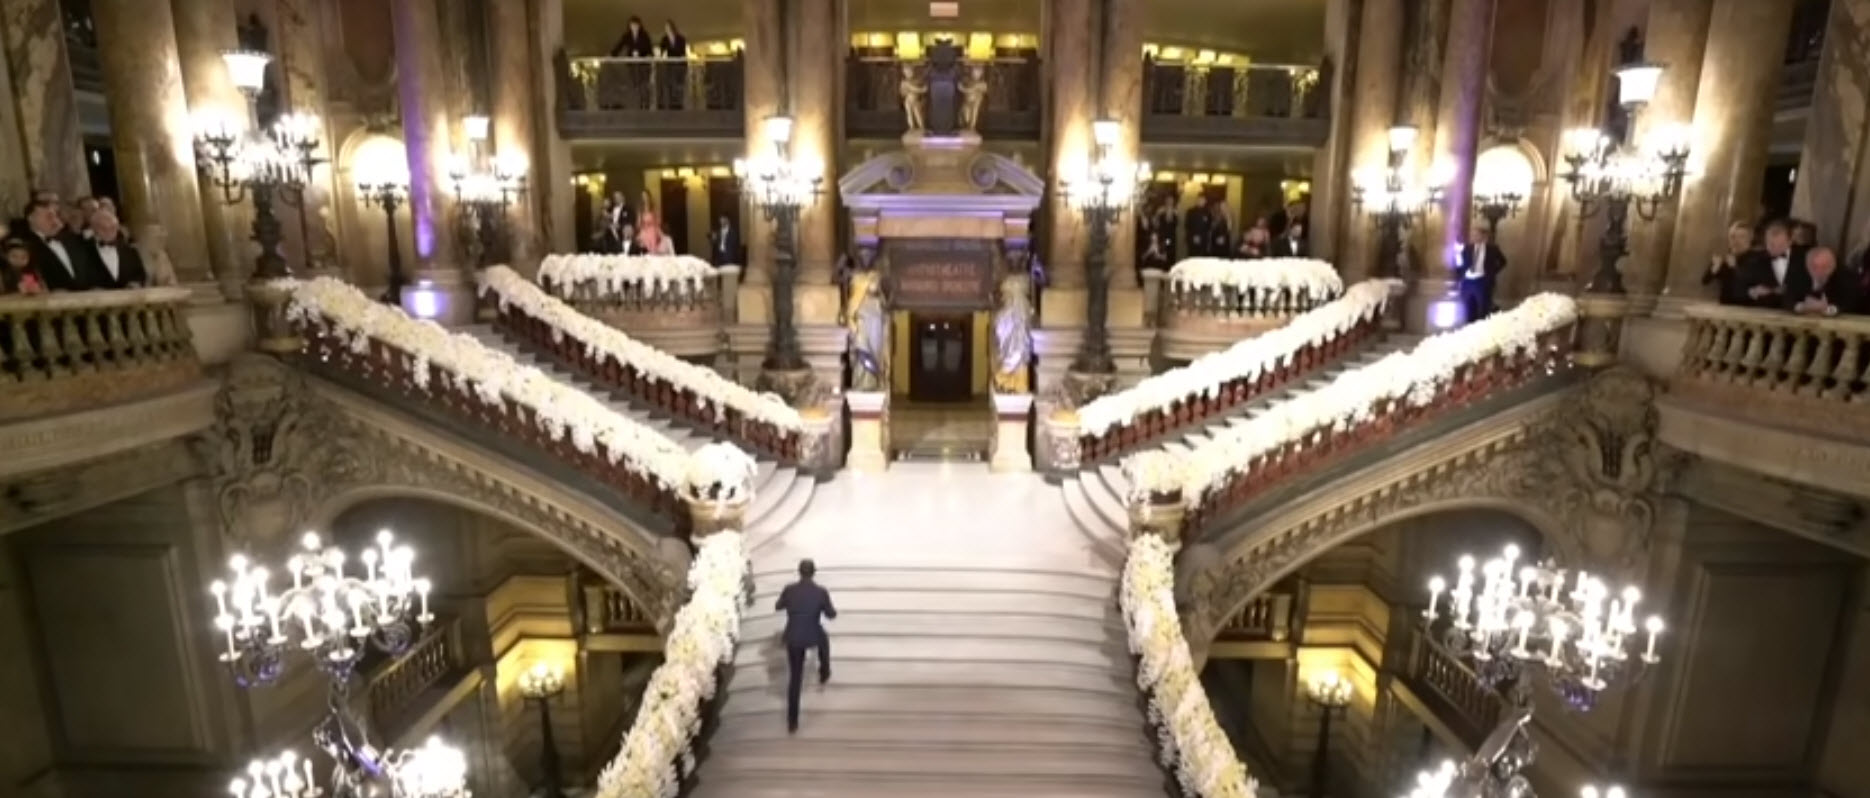 حفل زفاف أسطوري لحفيدة عبدالحليم خدام في باريس - فيديو